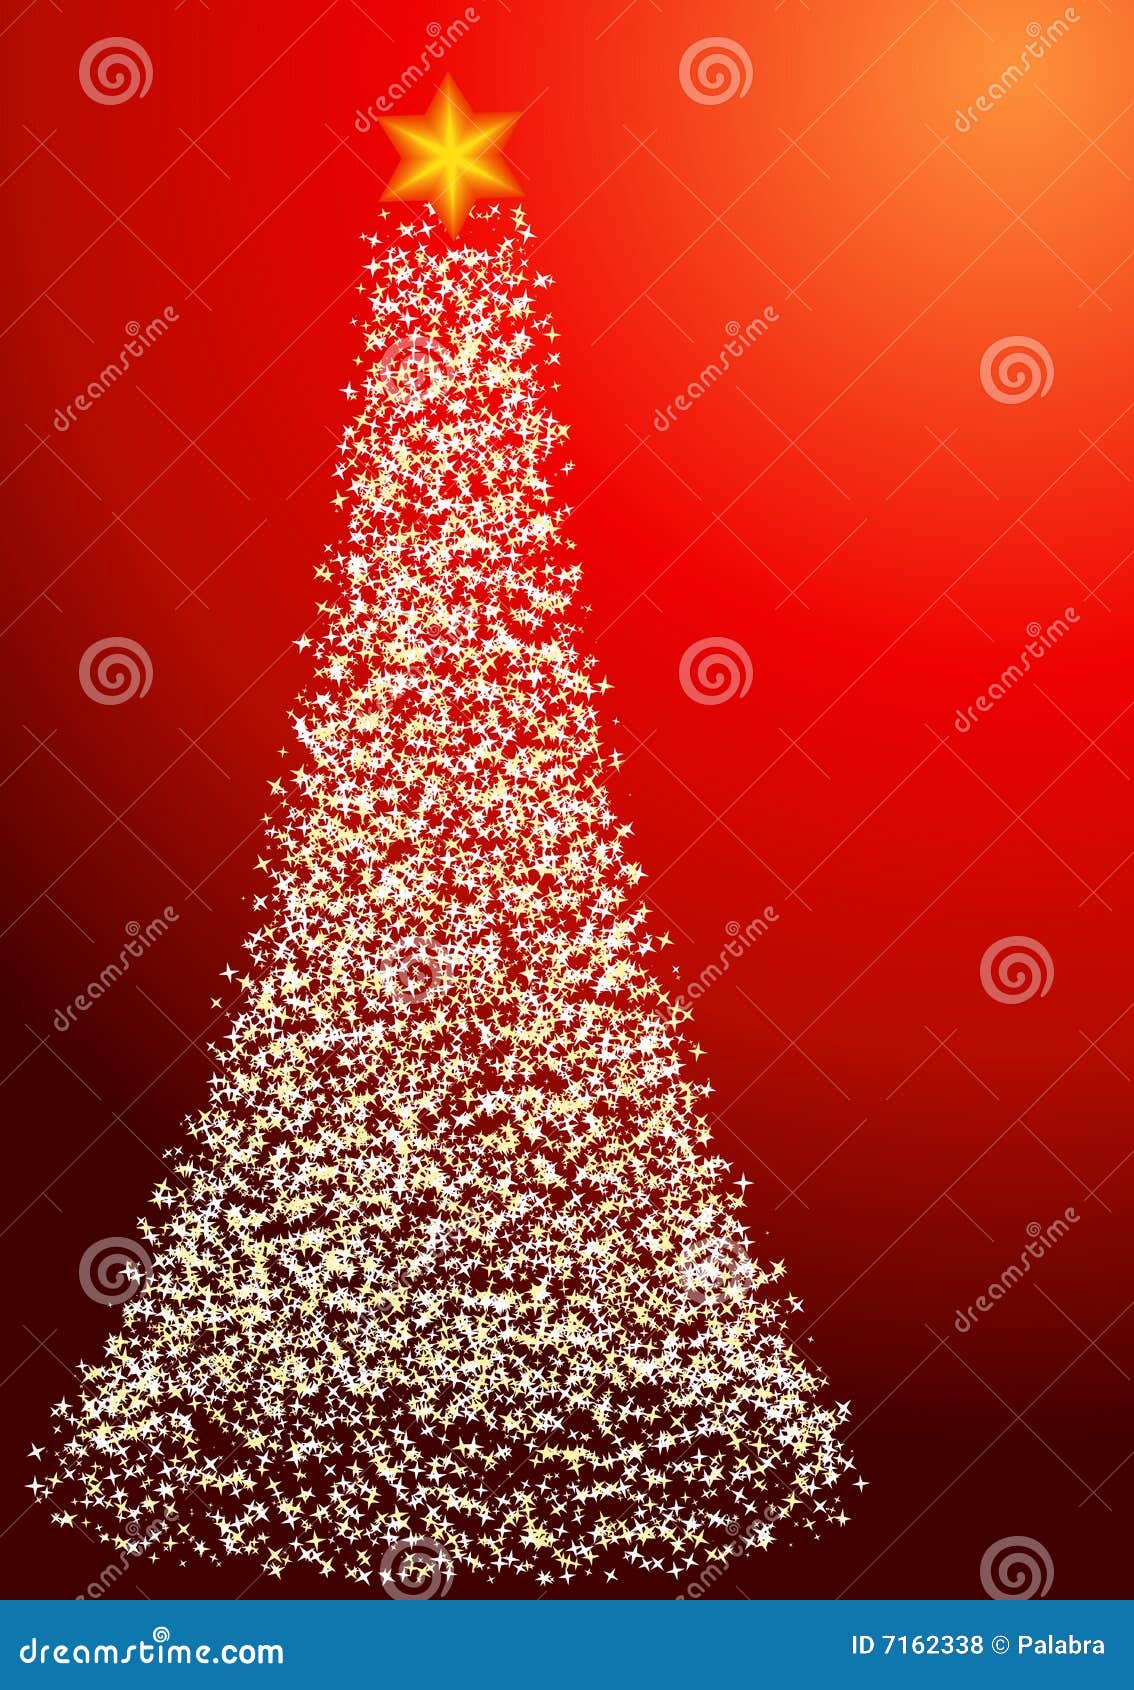 Cây thông Giáng sinh là biểu tượng thiêng liêng của mùa lễ hội đặc biệt này. Thật tuyệt vời khi được chiêm ngưỡng những bức ảnh đẹp lung linh với cây thông Giáng sinh rực rỡ, ấn tượng nhất cho mùa lễ hội năm nay.